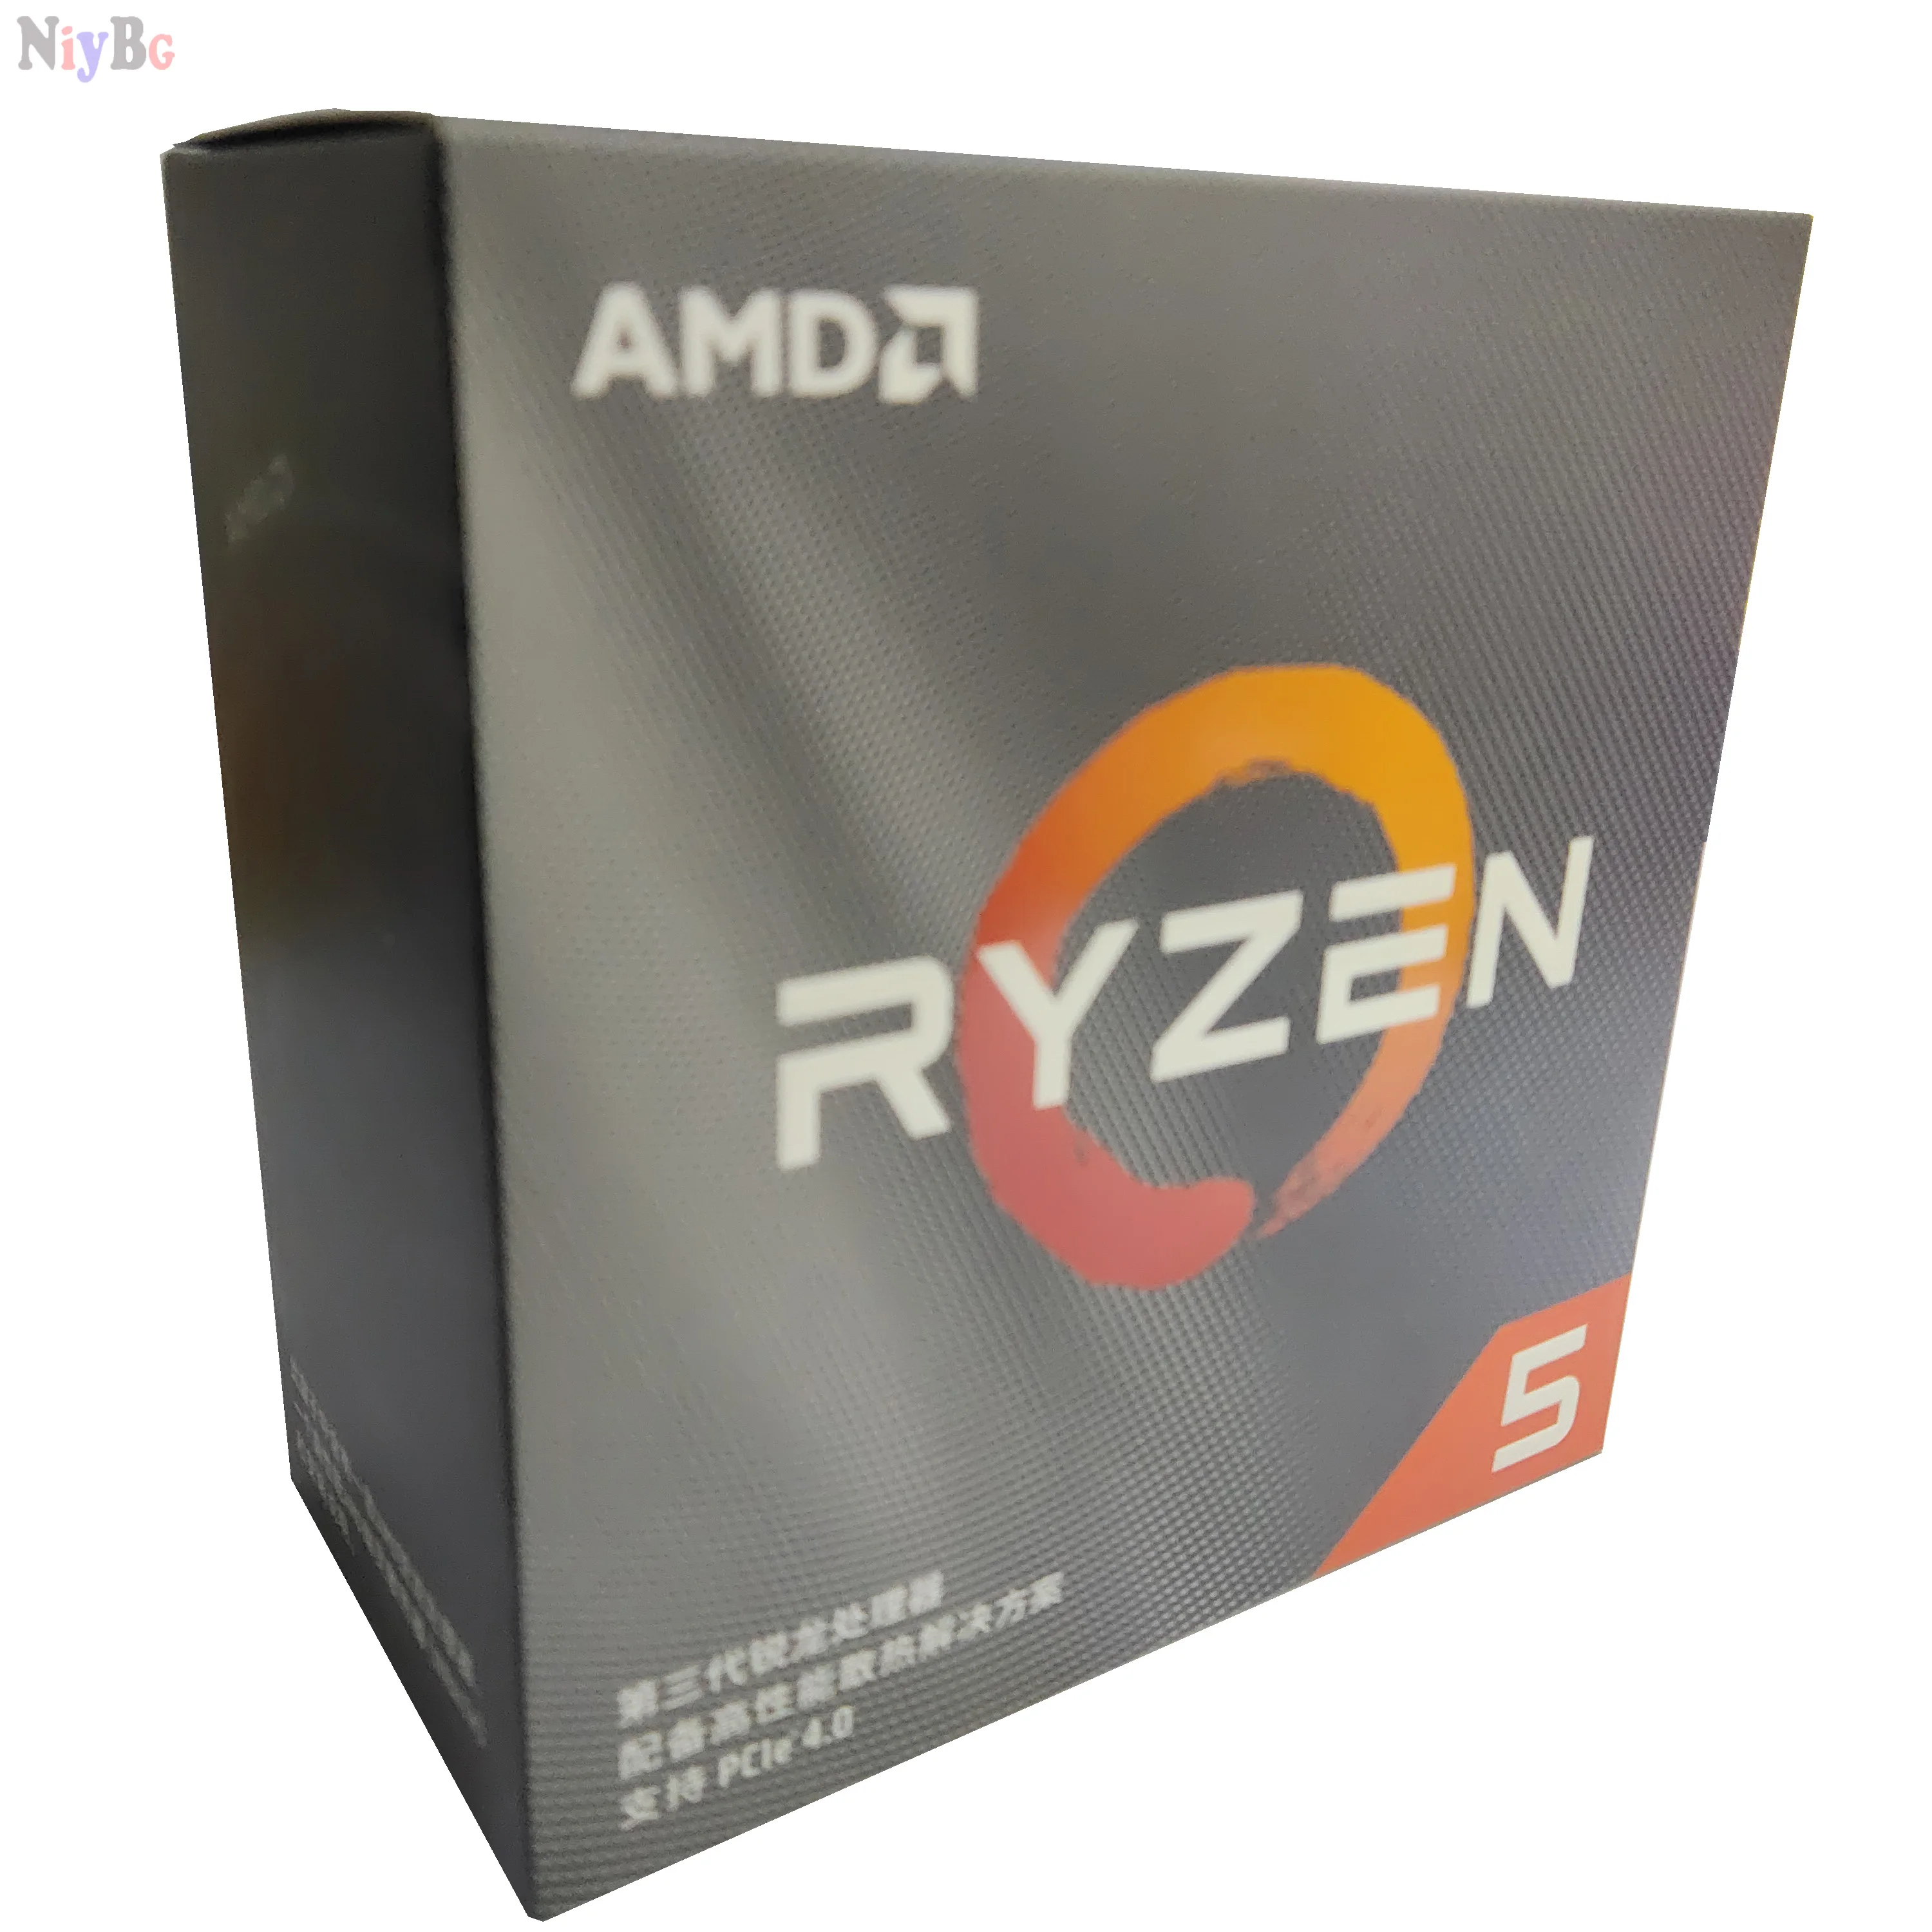 Popolnoma novo izvirno AMD Ryzen 5 3500X R5 3500X 3.6 GHz šest-core šest-nit CPU procesor z ventilatorjem 4100 MHz, socket AM4